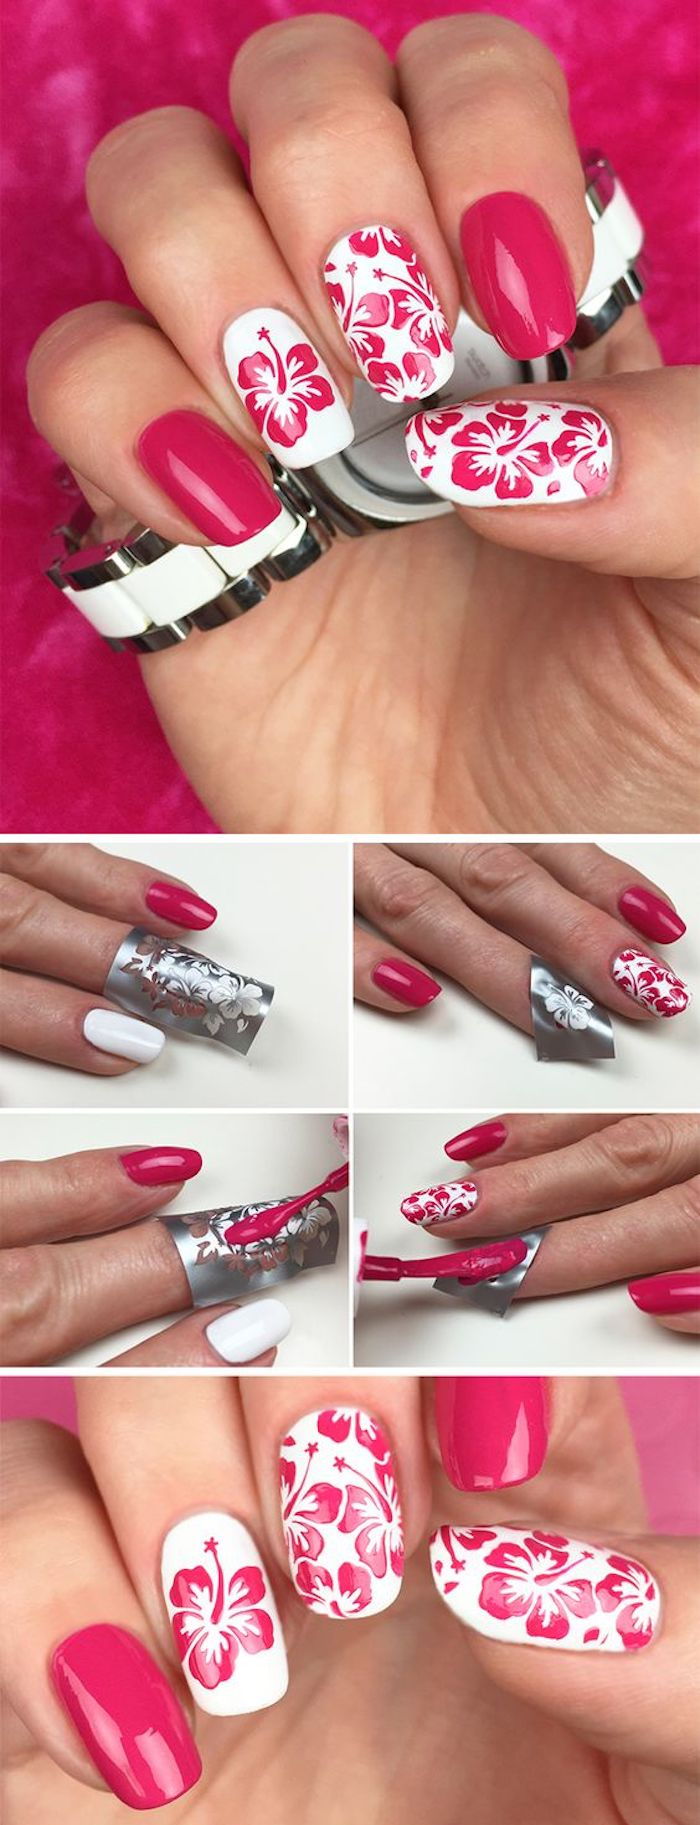 Nails mönster, nagel design i rosa och vit med blommor